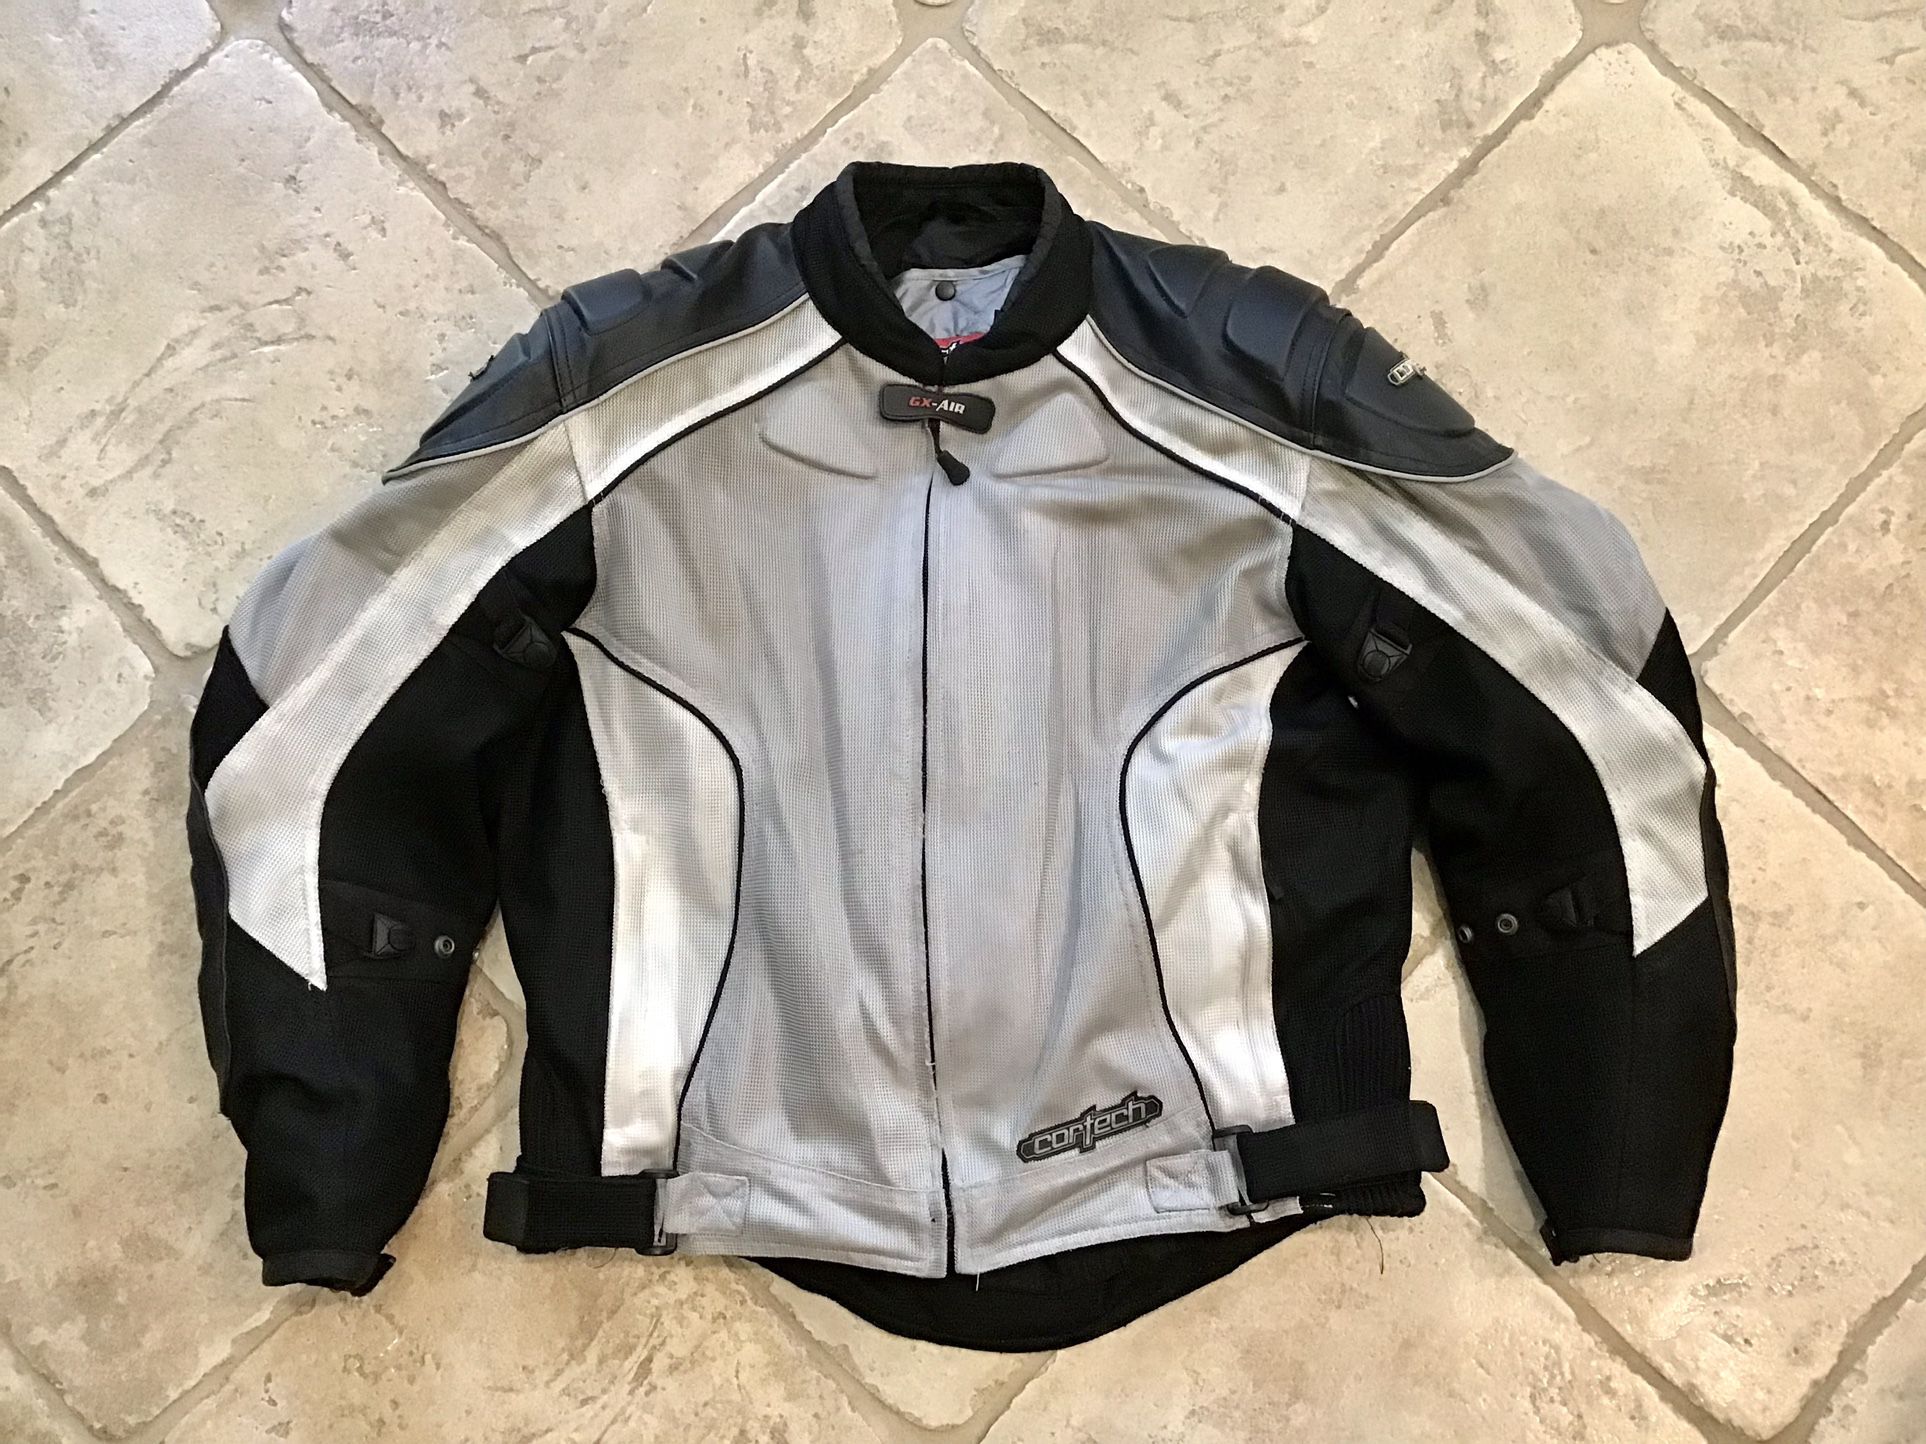 Cortech Motorcycle Jacket